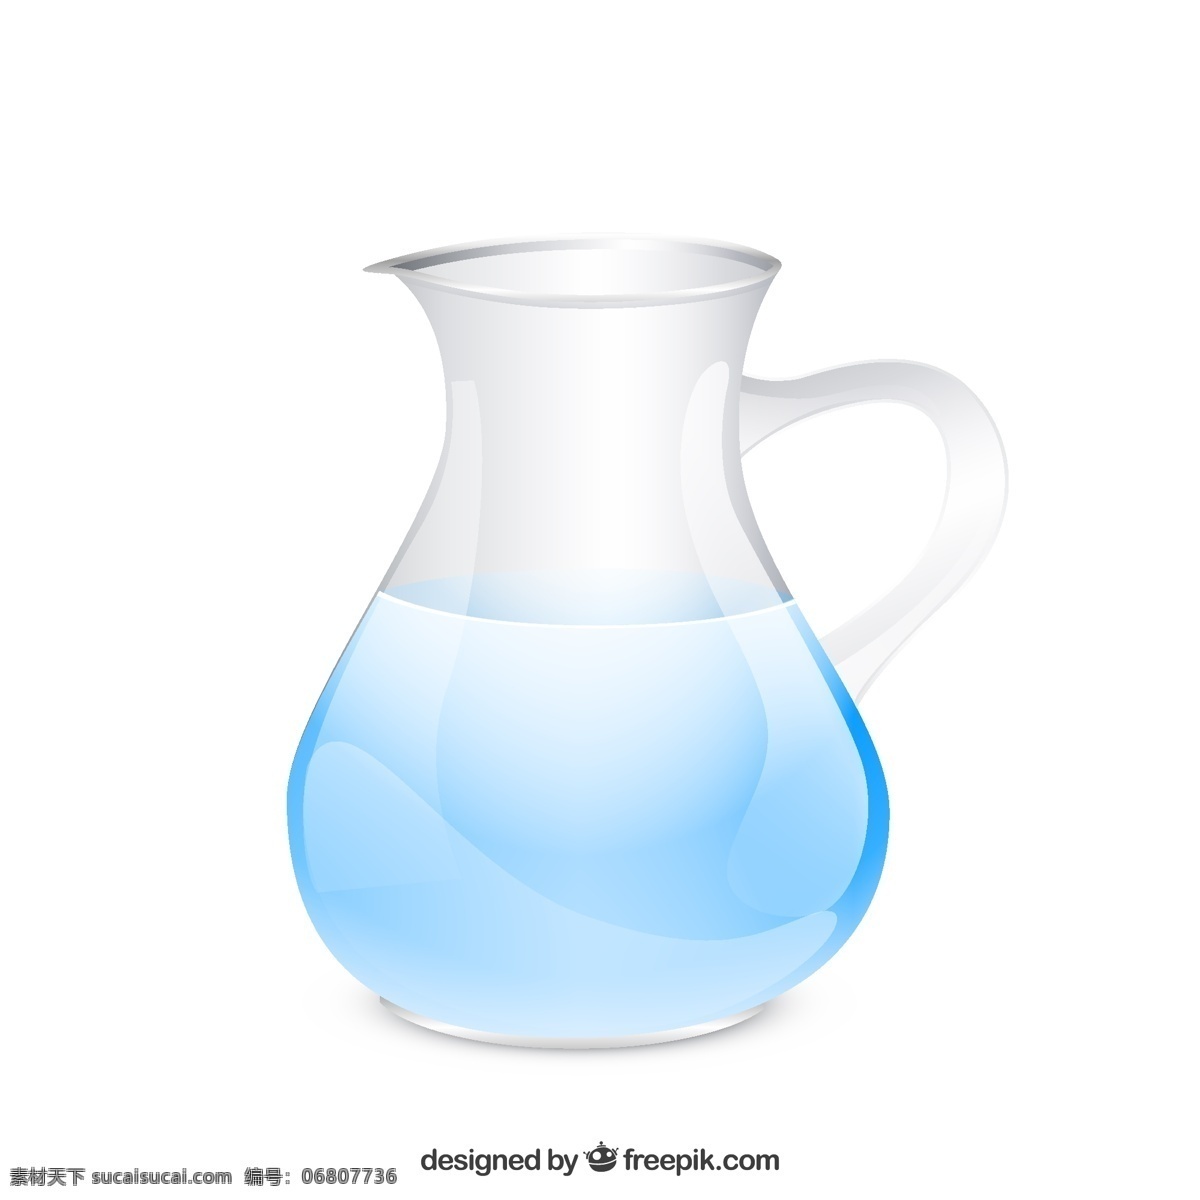 透明玻璃水壶 透明 玻璃 水壶 蓝色 日常用品 白色